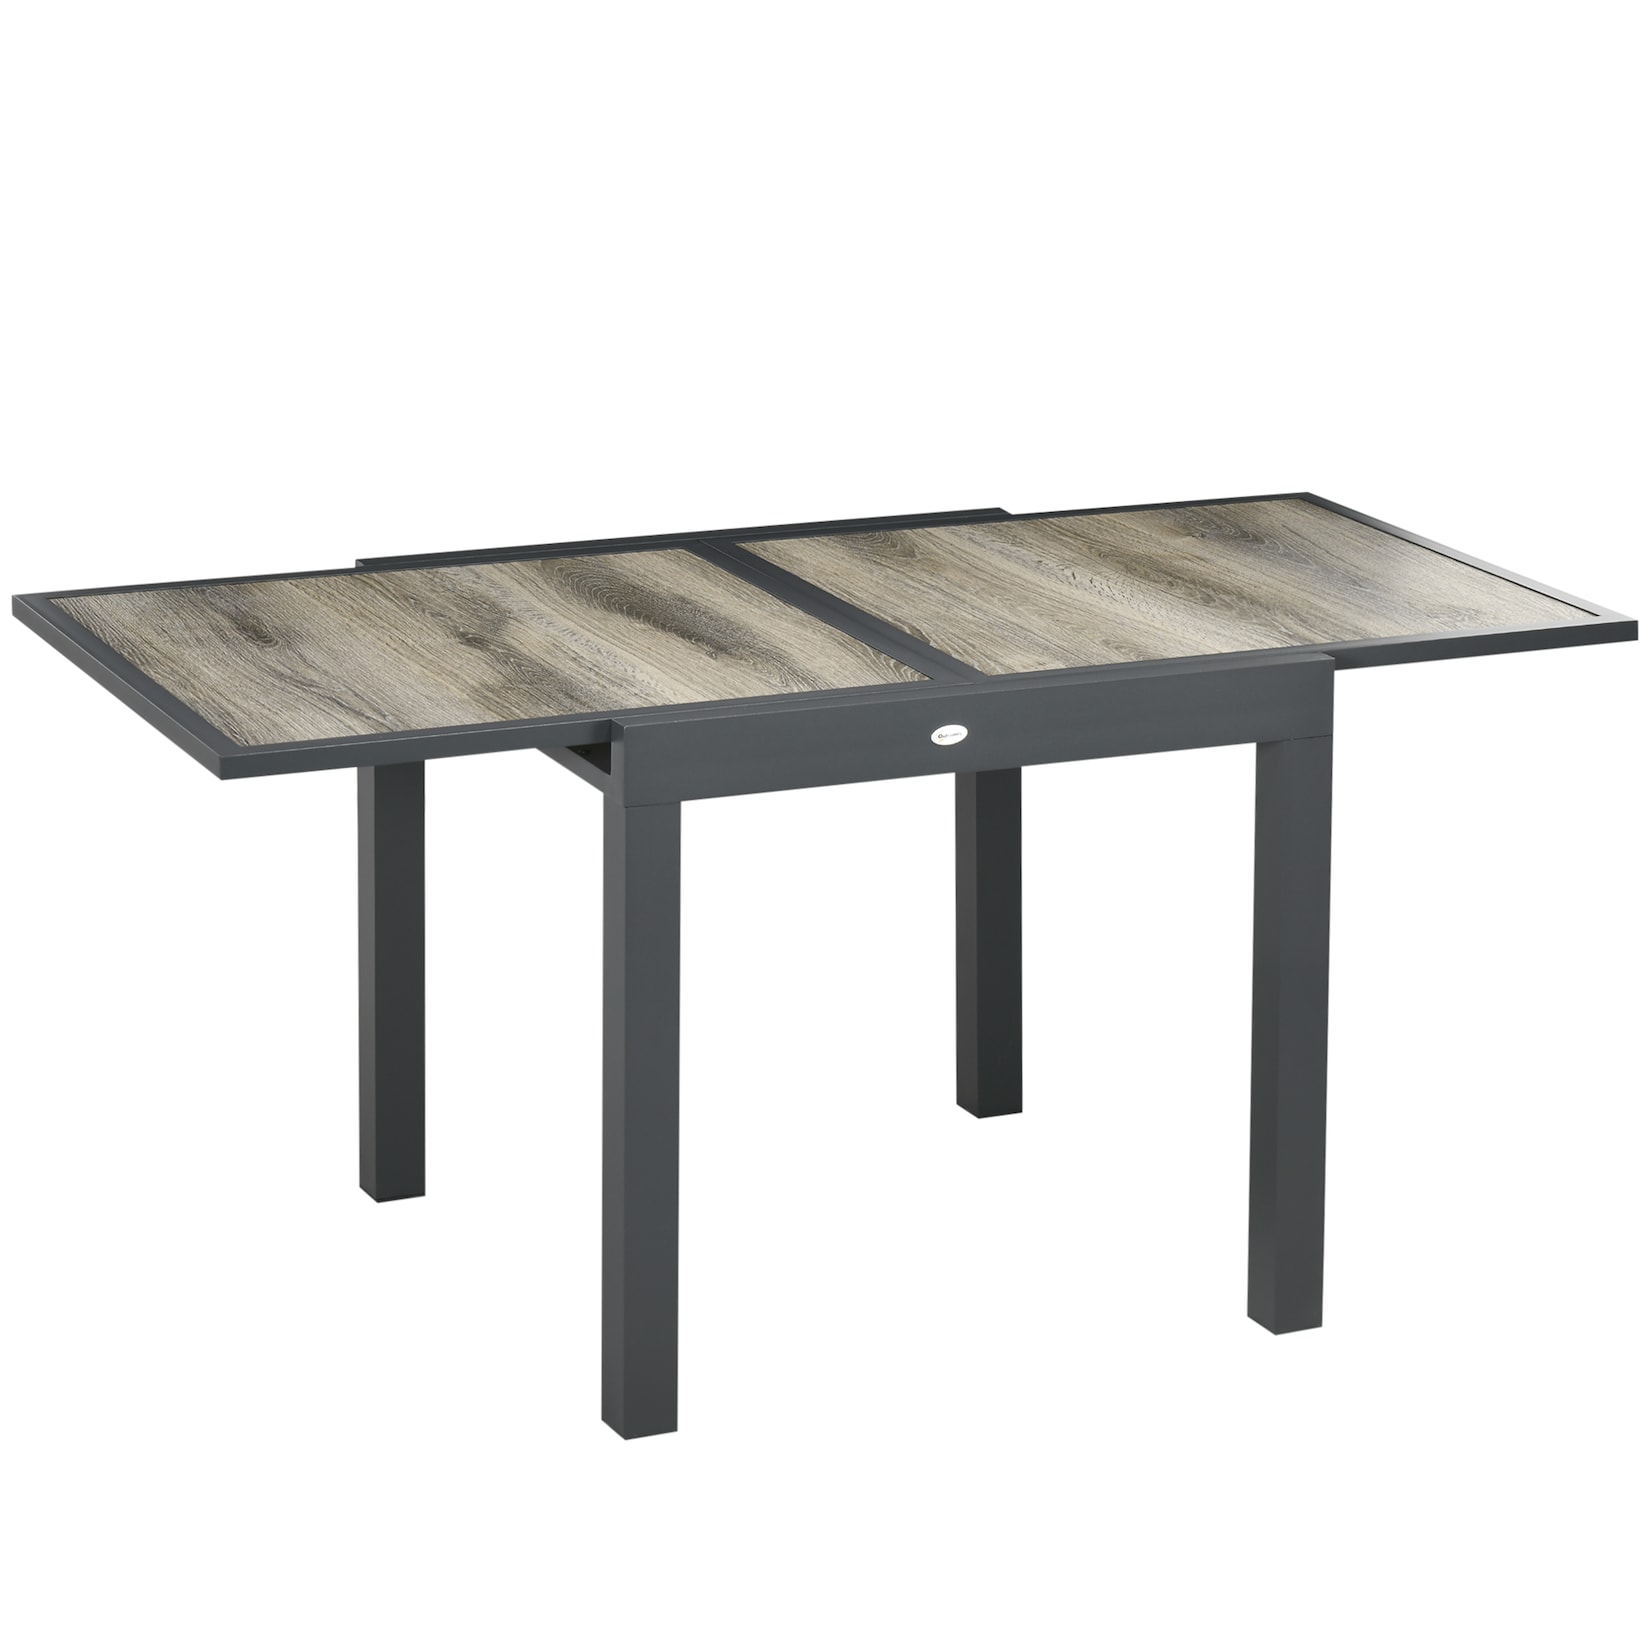 Outsunny Gartentisch mit ausziehbarer Tischplatte natur, schwarz 80/160L x 80B x 75H cm